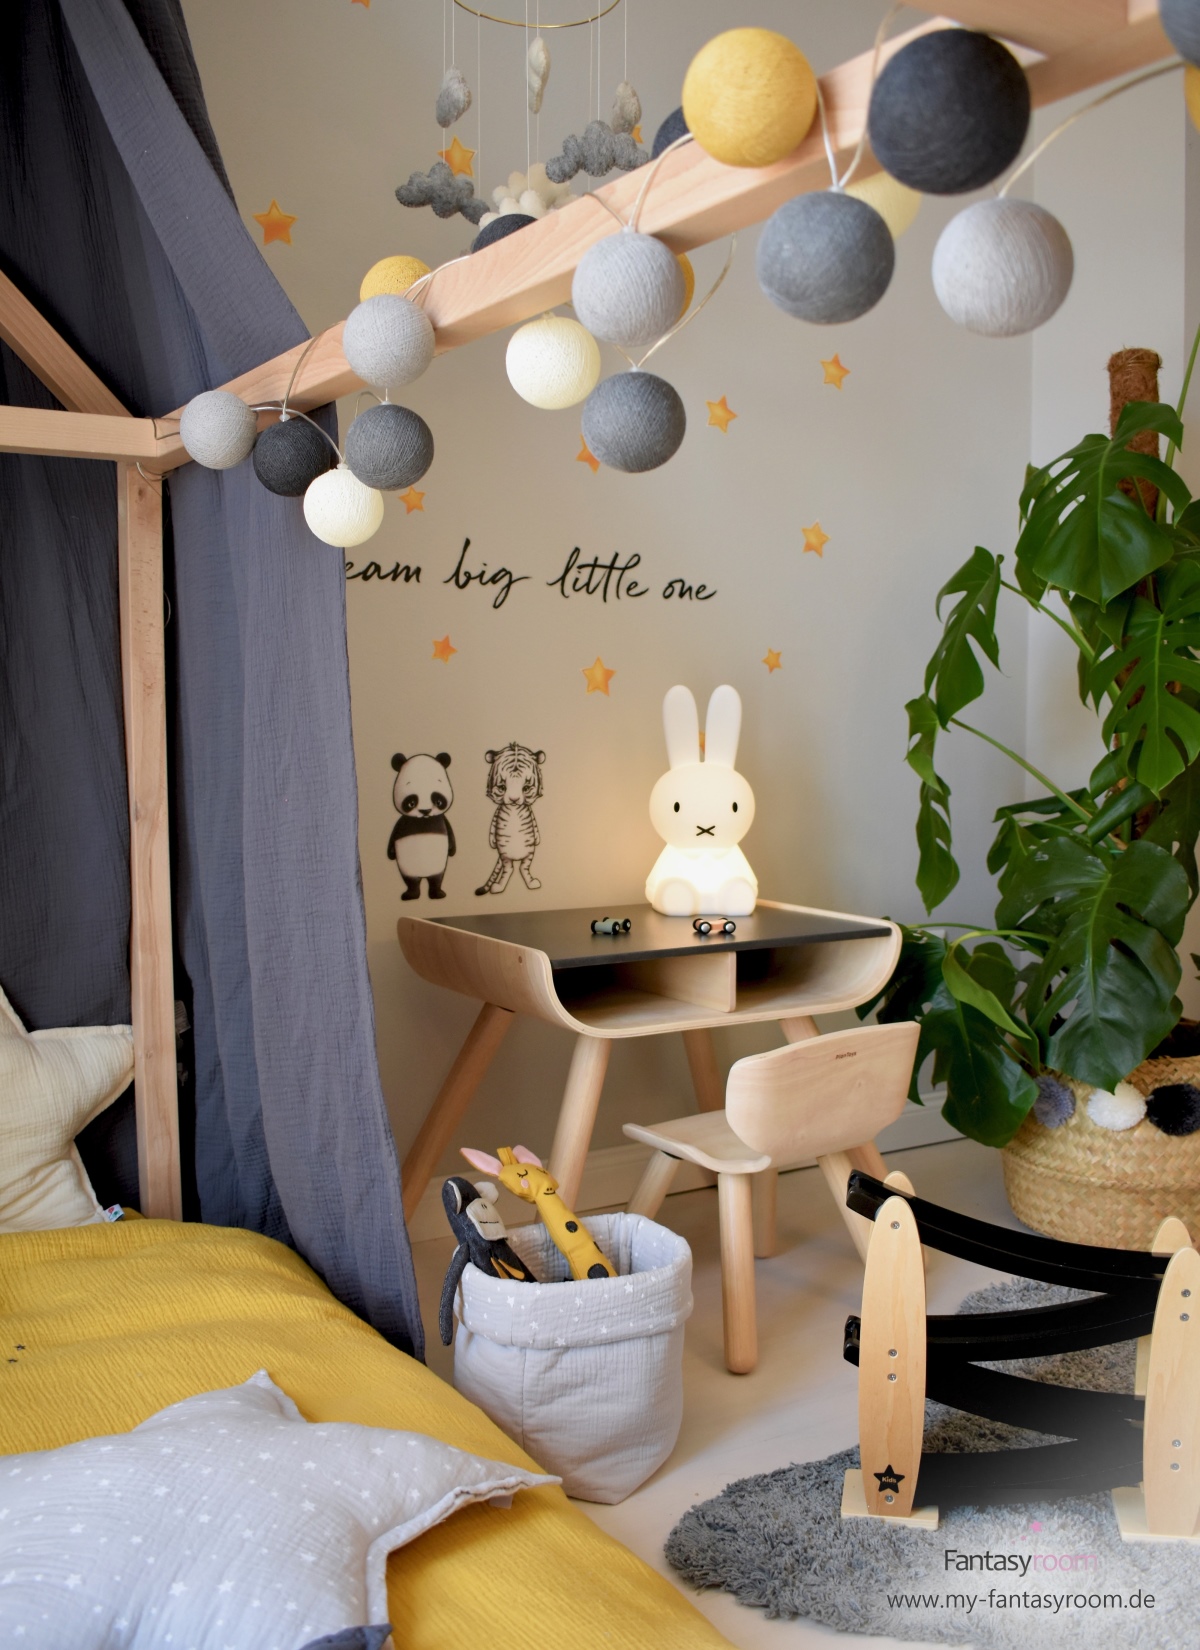 Lichterkette am Hausbett im stylischen Kinderzimmer in Senfgelb und Grau